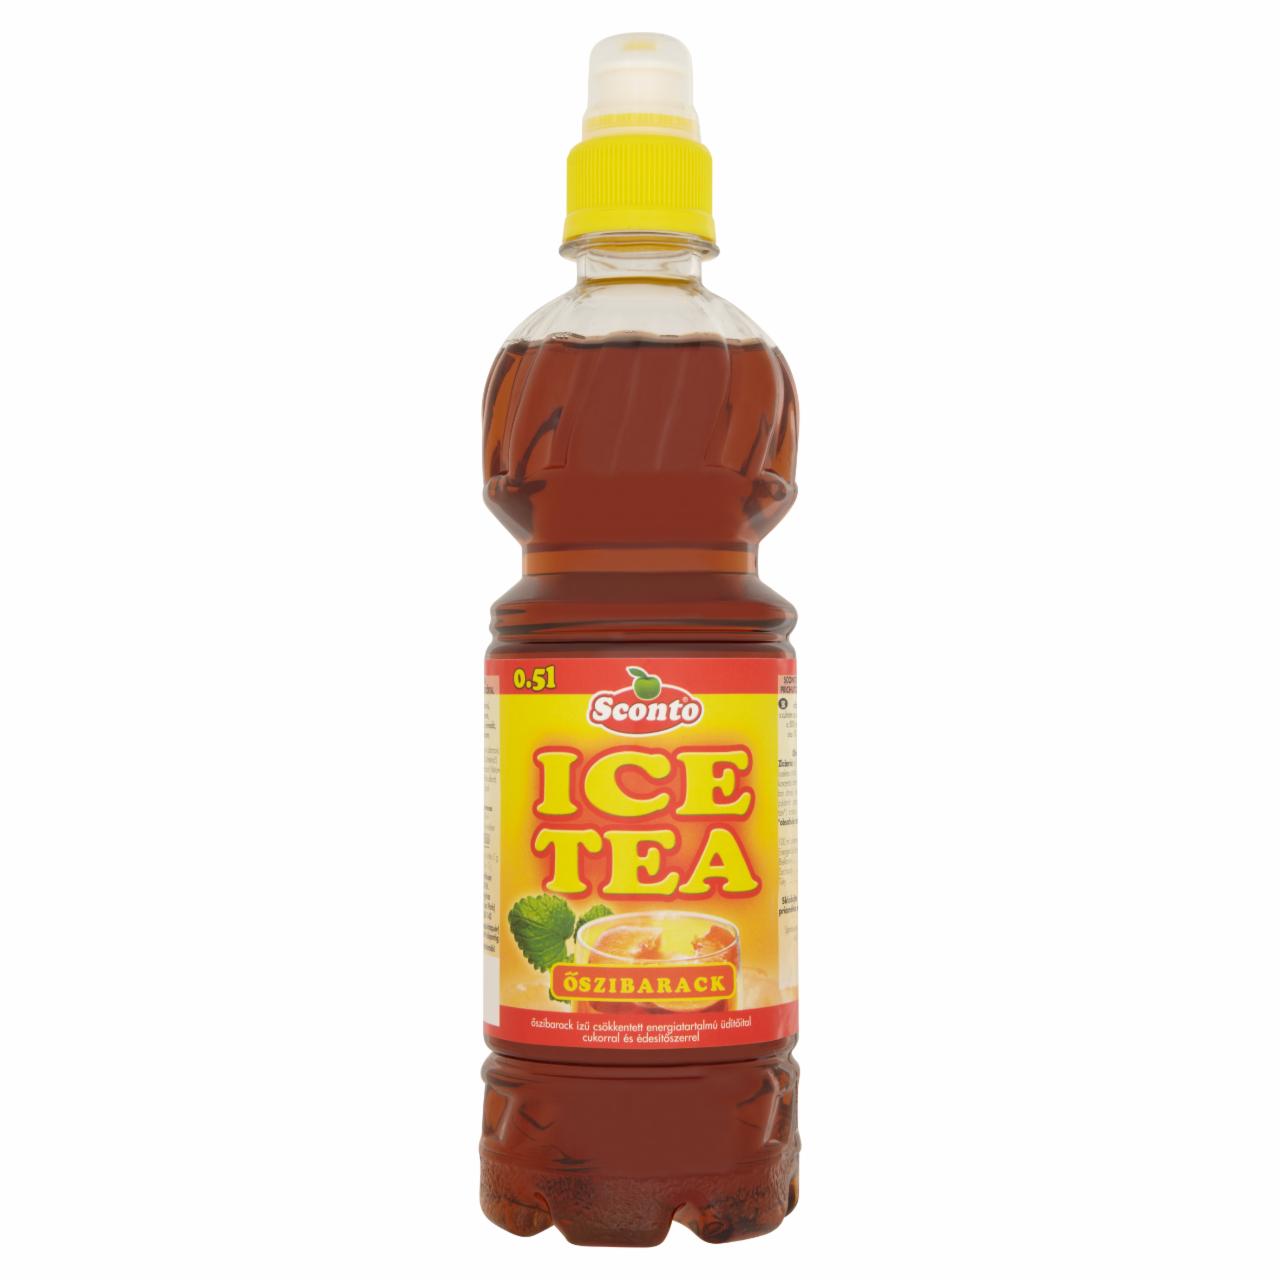 Képek - Sconto Ice Tea őszibarack ízű üdítőital 0,5 l